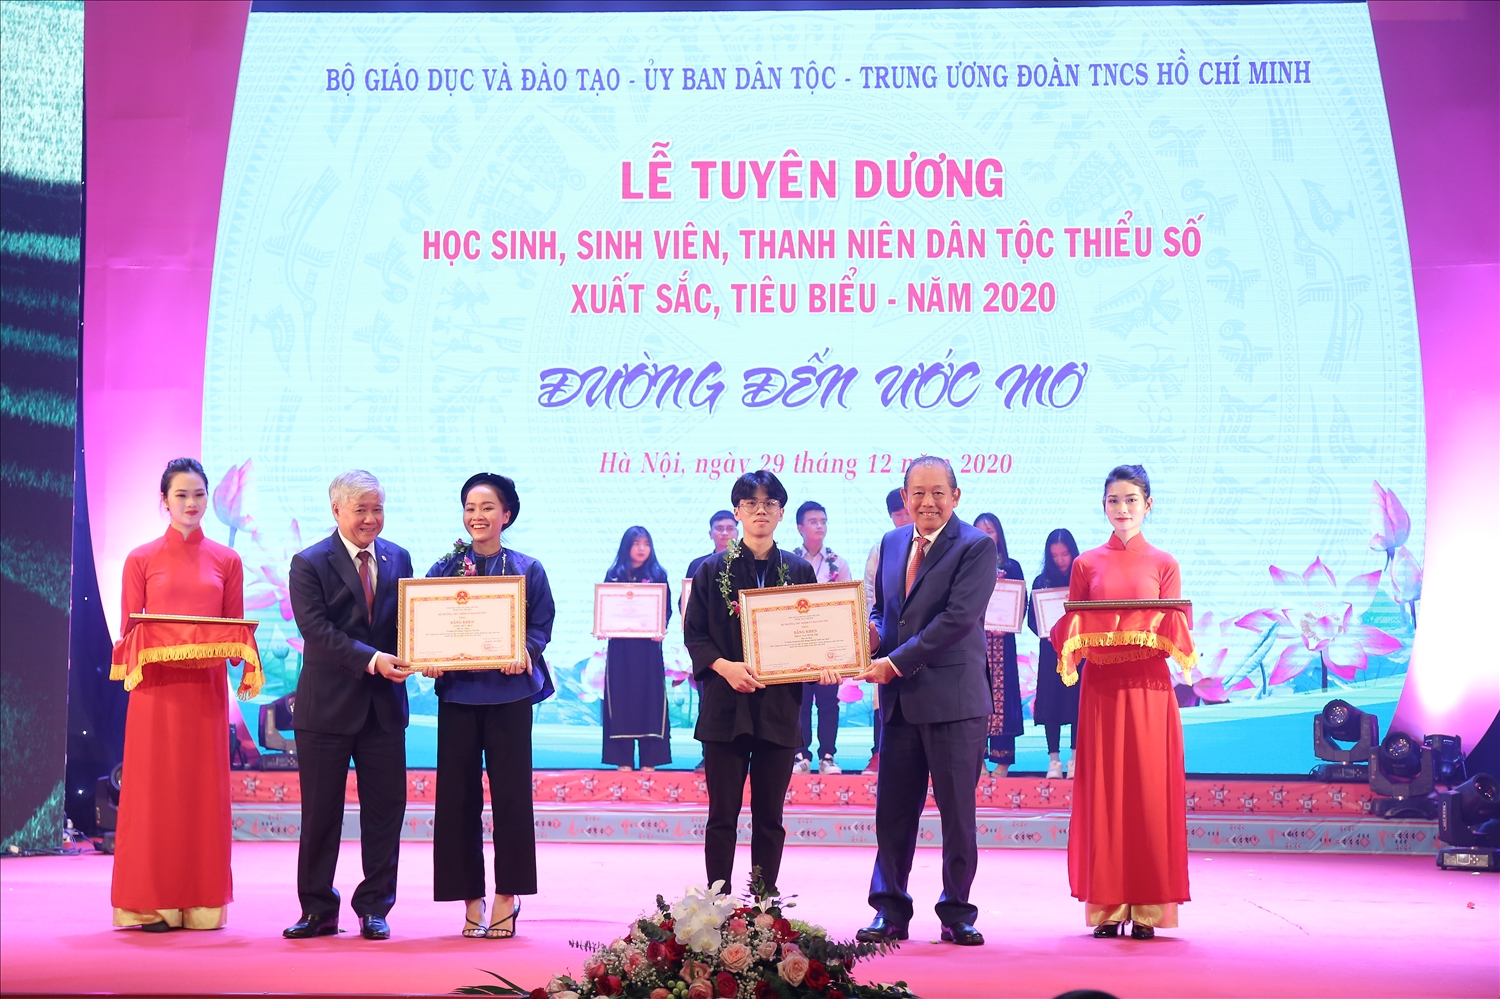 Nguyên Phó Thủ tướng Chính phủ Trương Hòa Bình cùng Bí thư Trung ương Đảng, Chủ tịch Ủy ban Trung ương MTTQ Việt Nam, Nguyên Bộ trưởng, Chủ nhiệm Ủy ban Dân tộc Đỗ Văn Chiến tặng Bằng khen cho các HSSV được tuyên dương năm 2020.